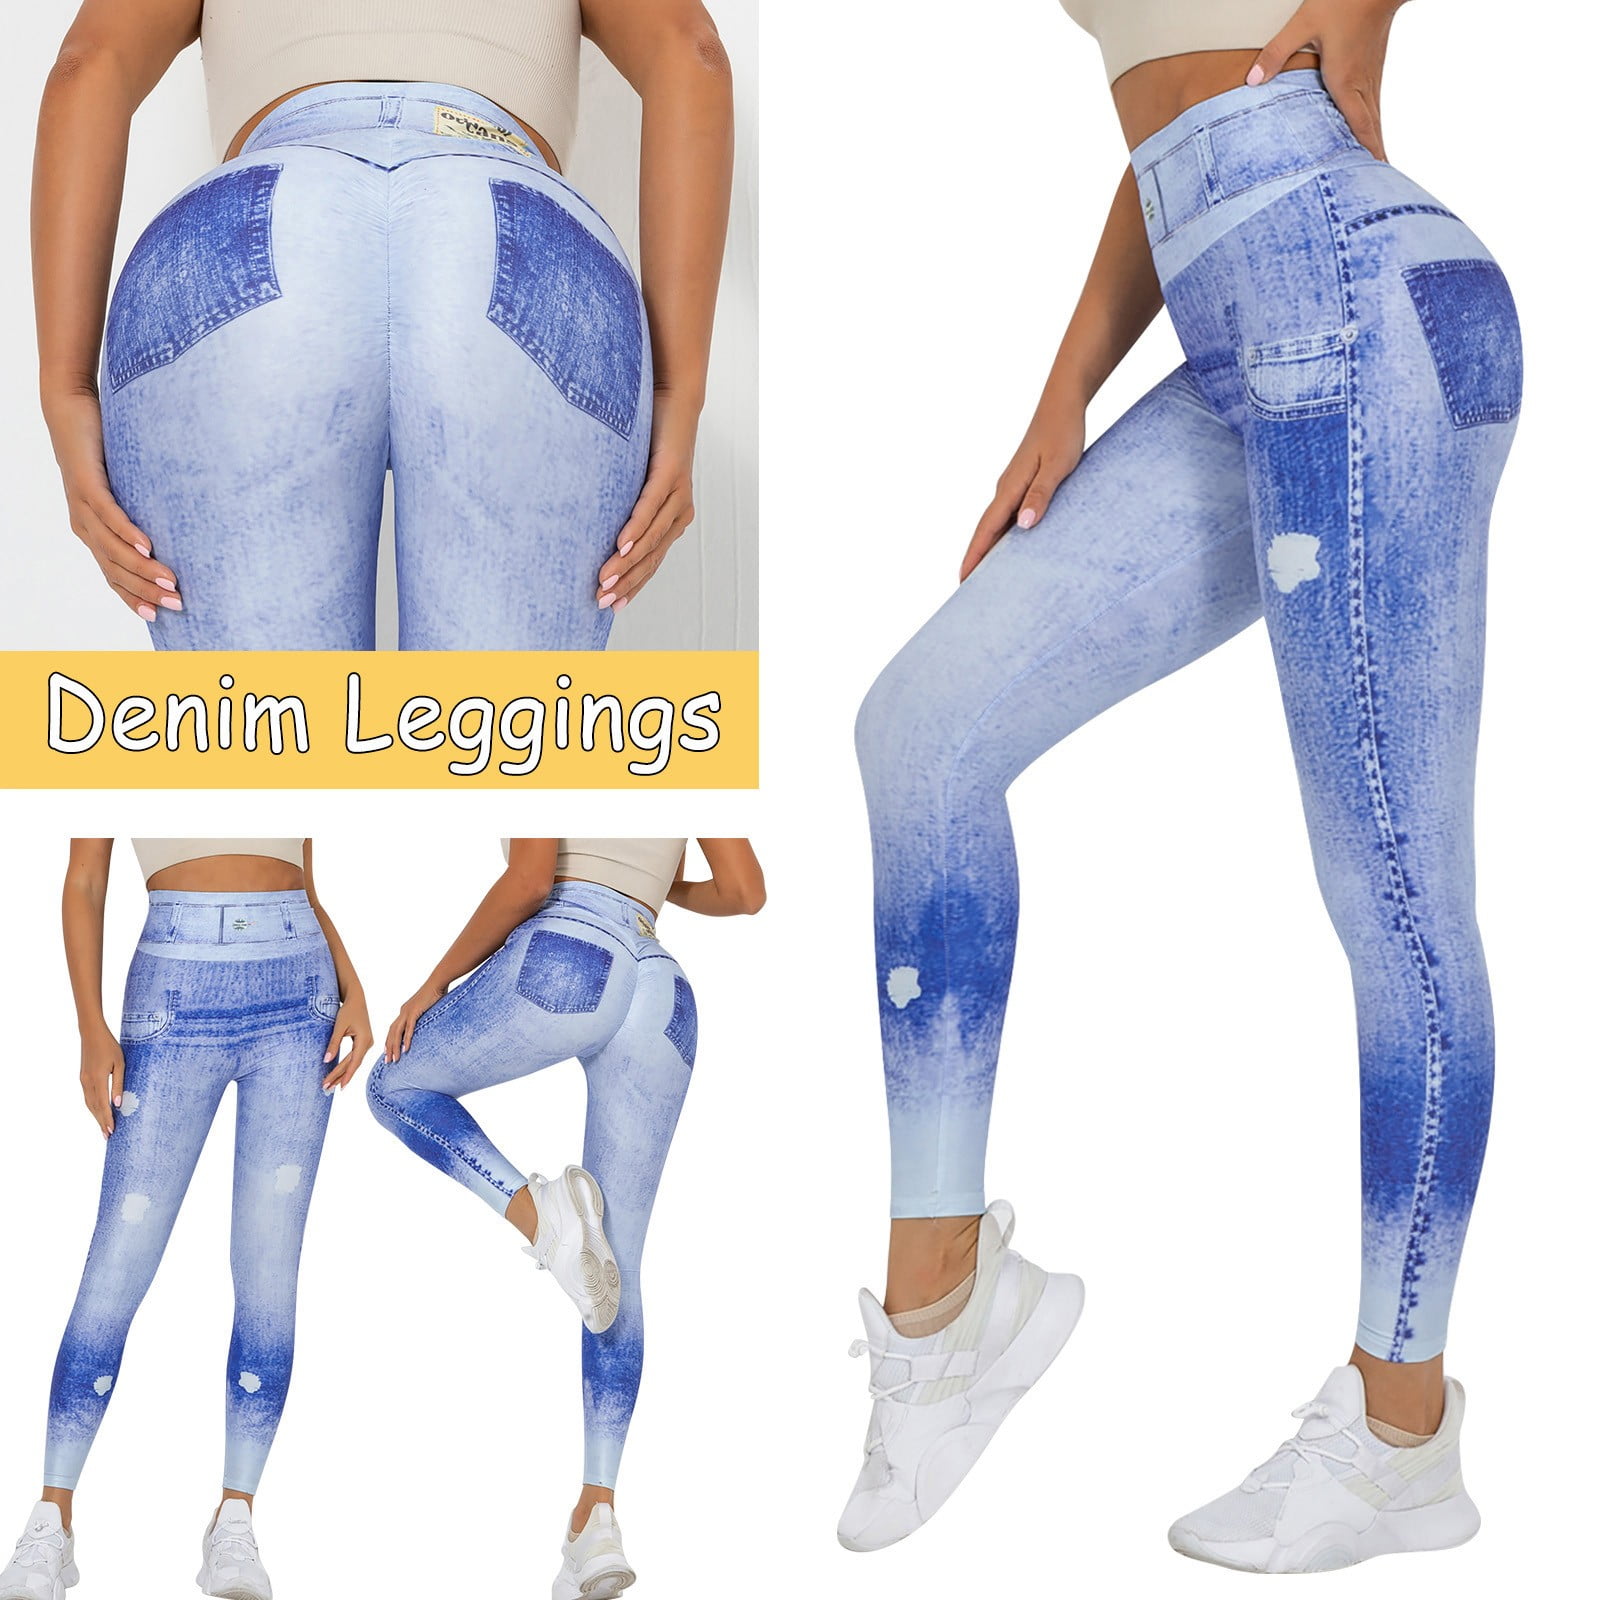 Women's Skinny Jeans Like Leggings High Waisted Body Shapes